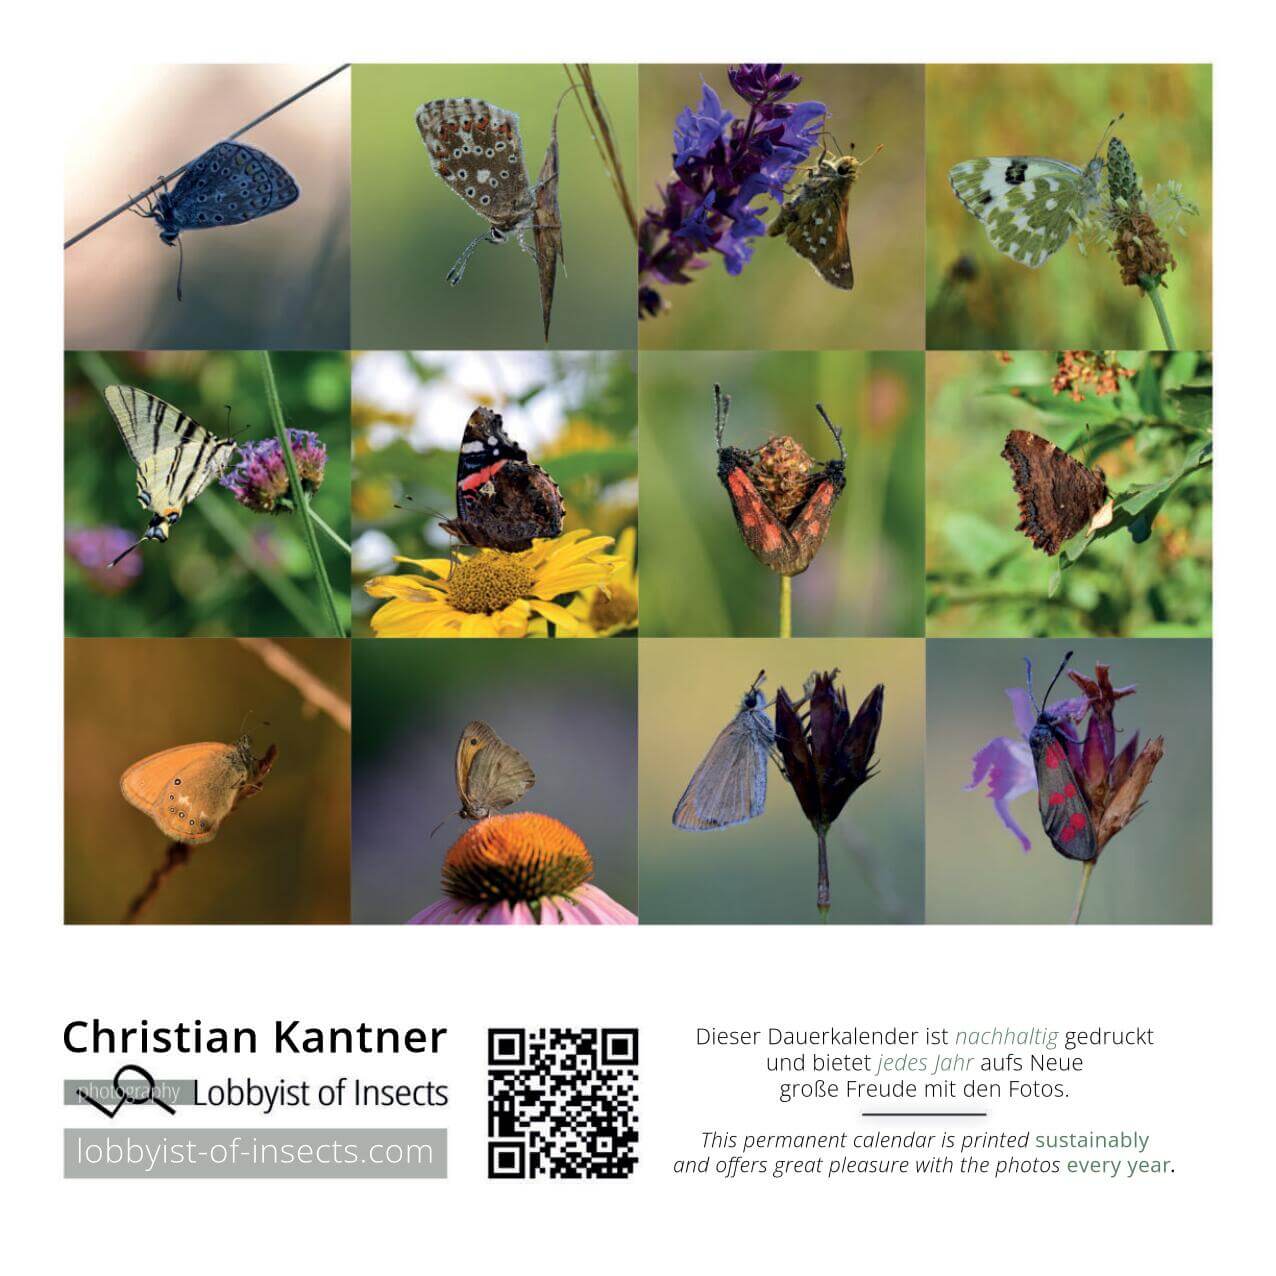 AKUPARA-Tierschutz-Artenschutz-Naturschutz-Naturfotografin-lobbyist-of-insects